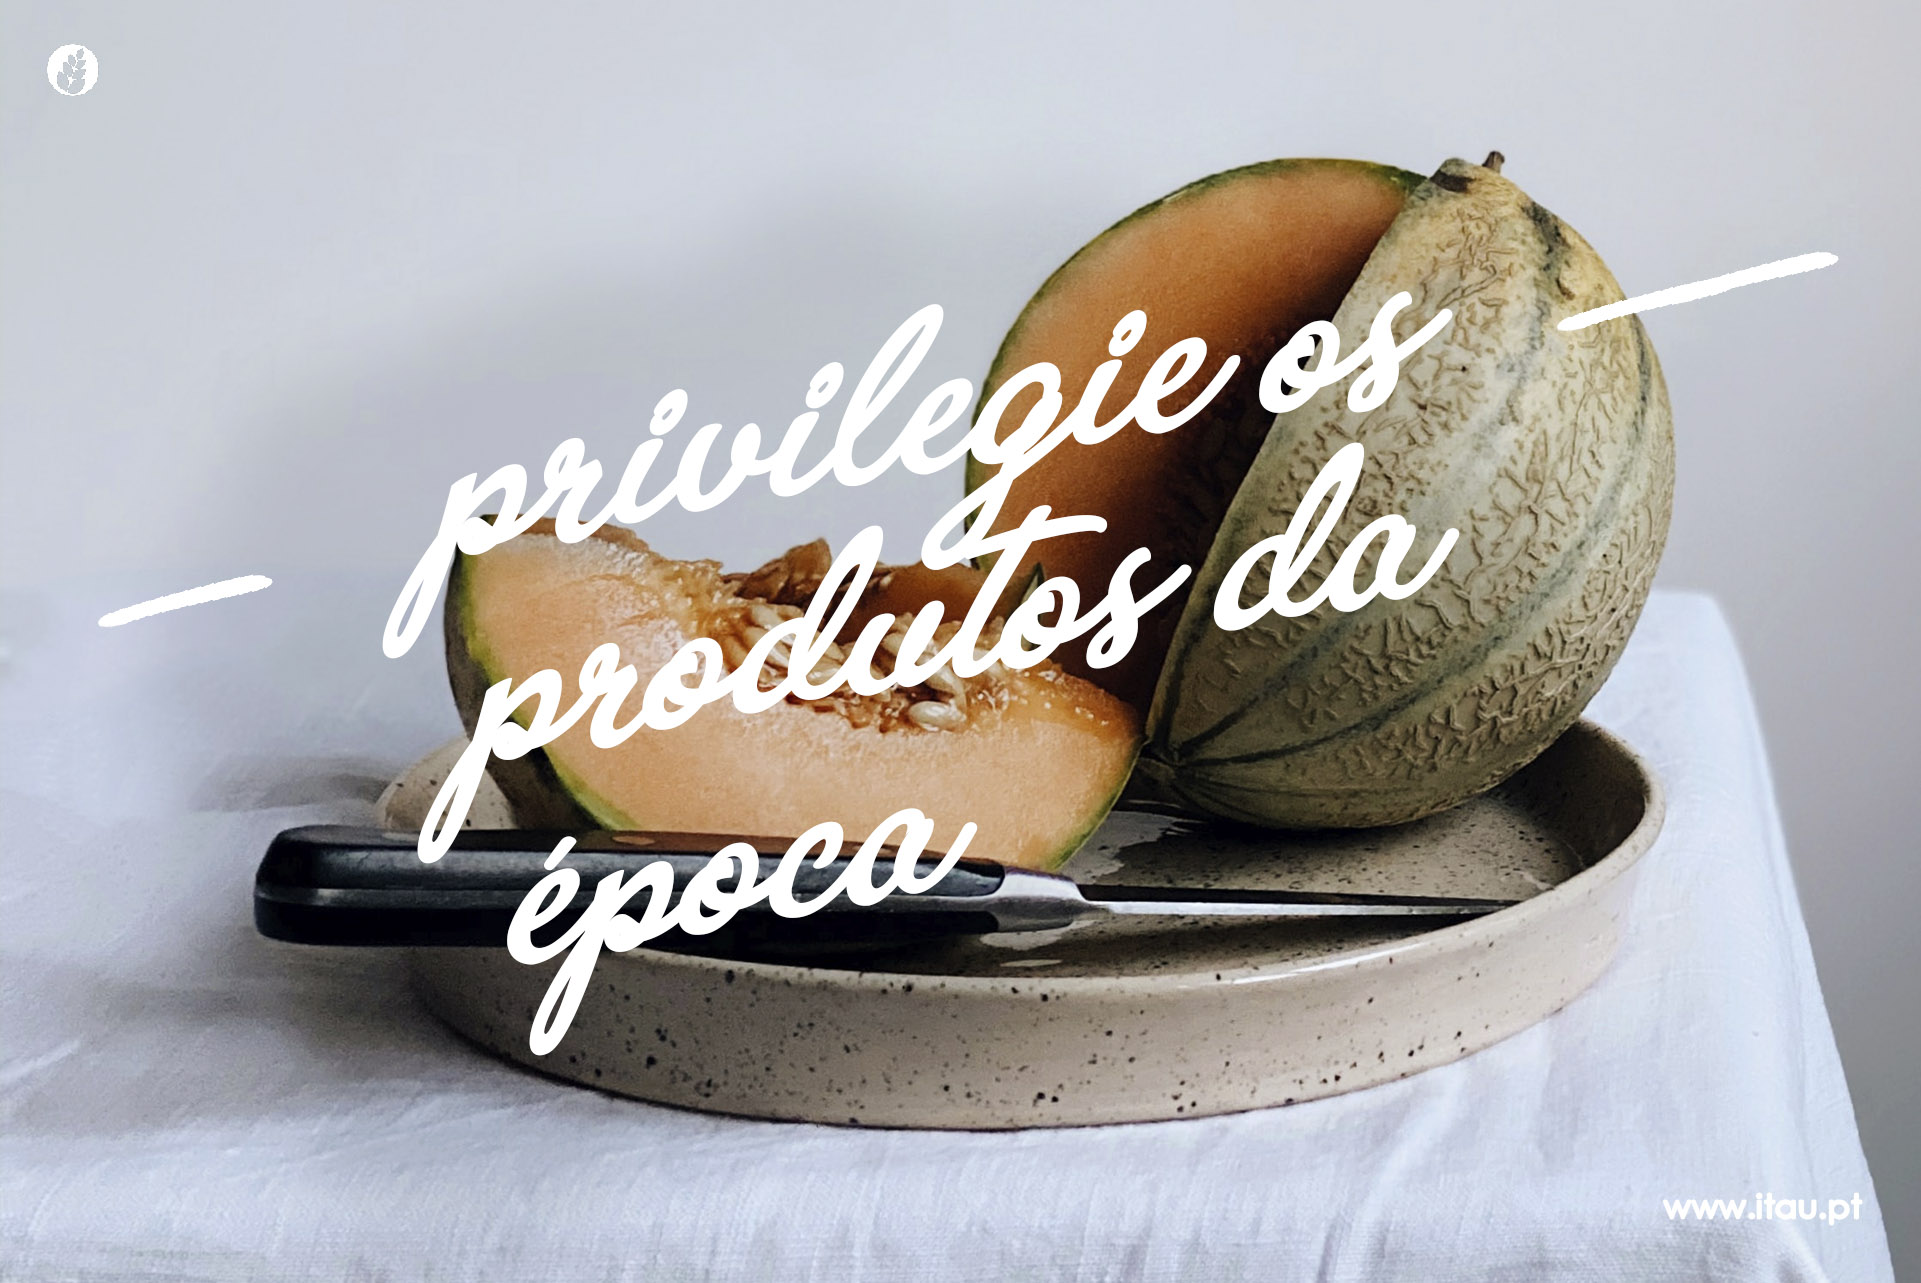 Privilegie os produtos da época – Meloa